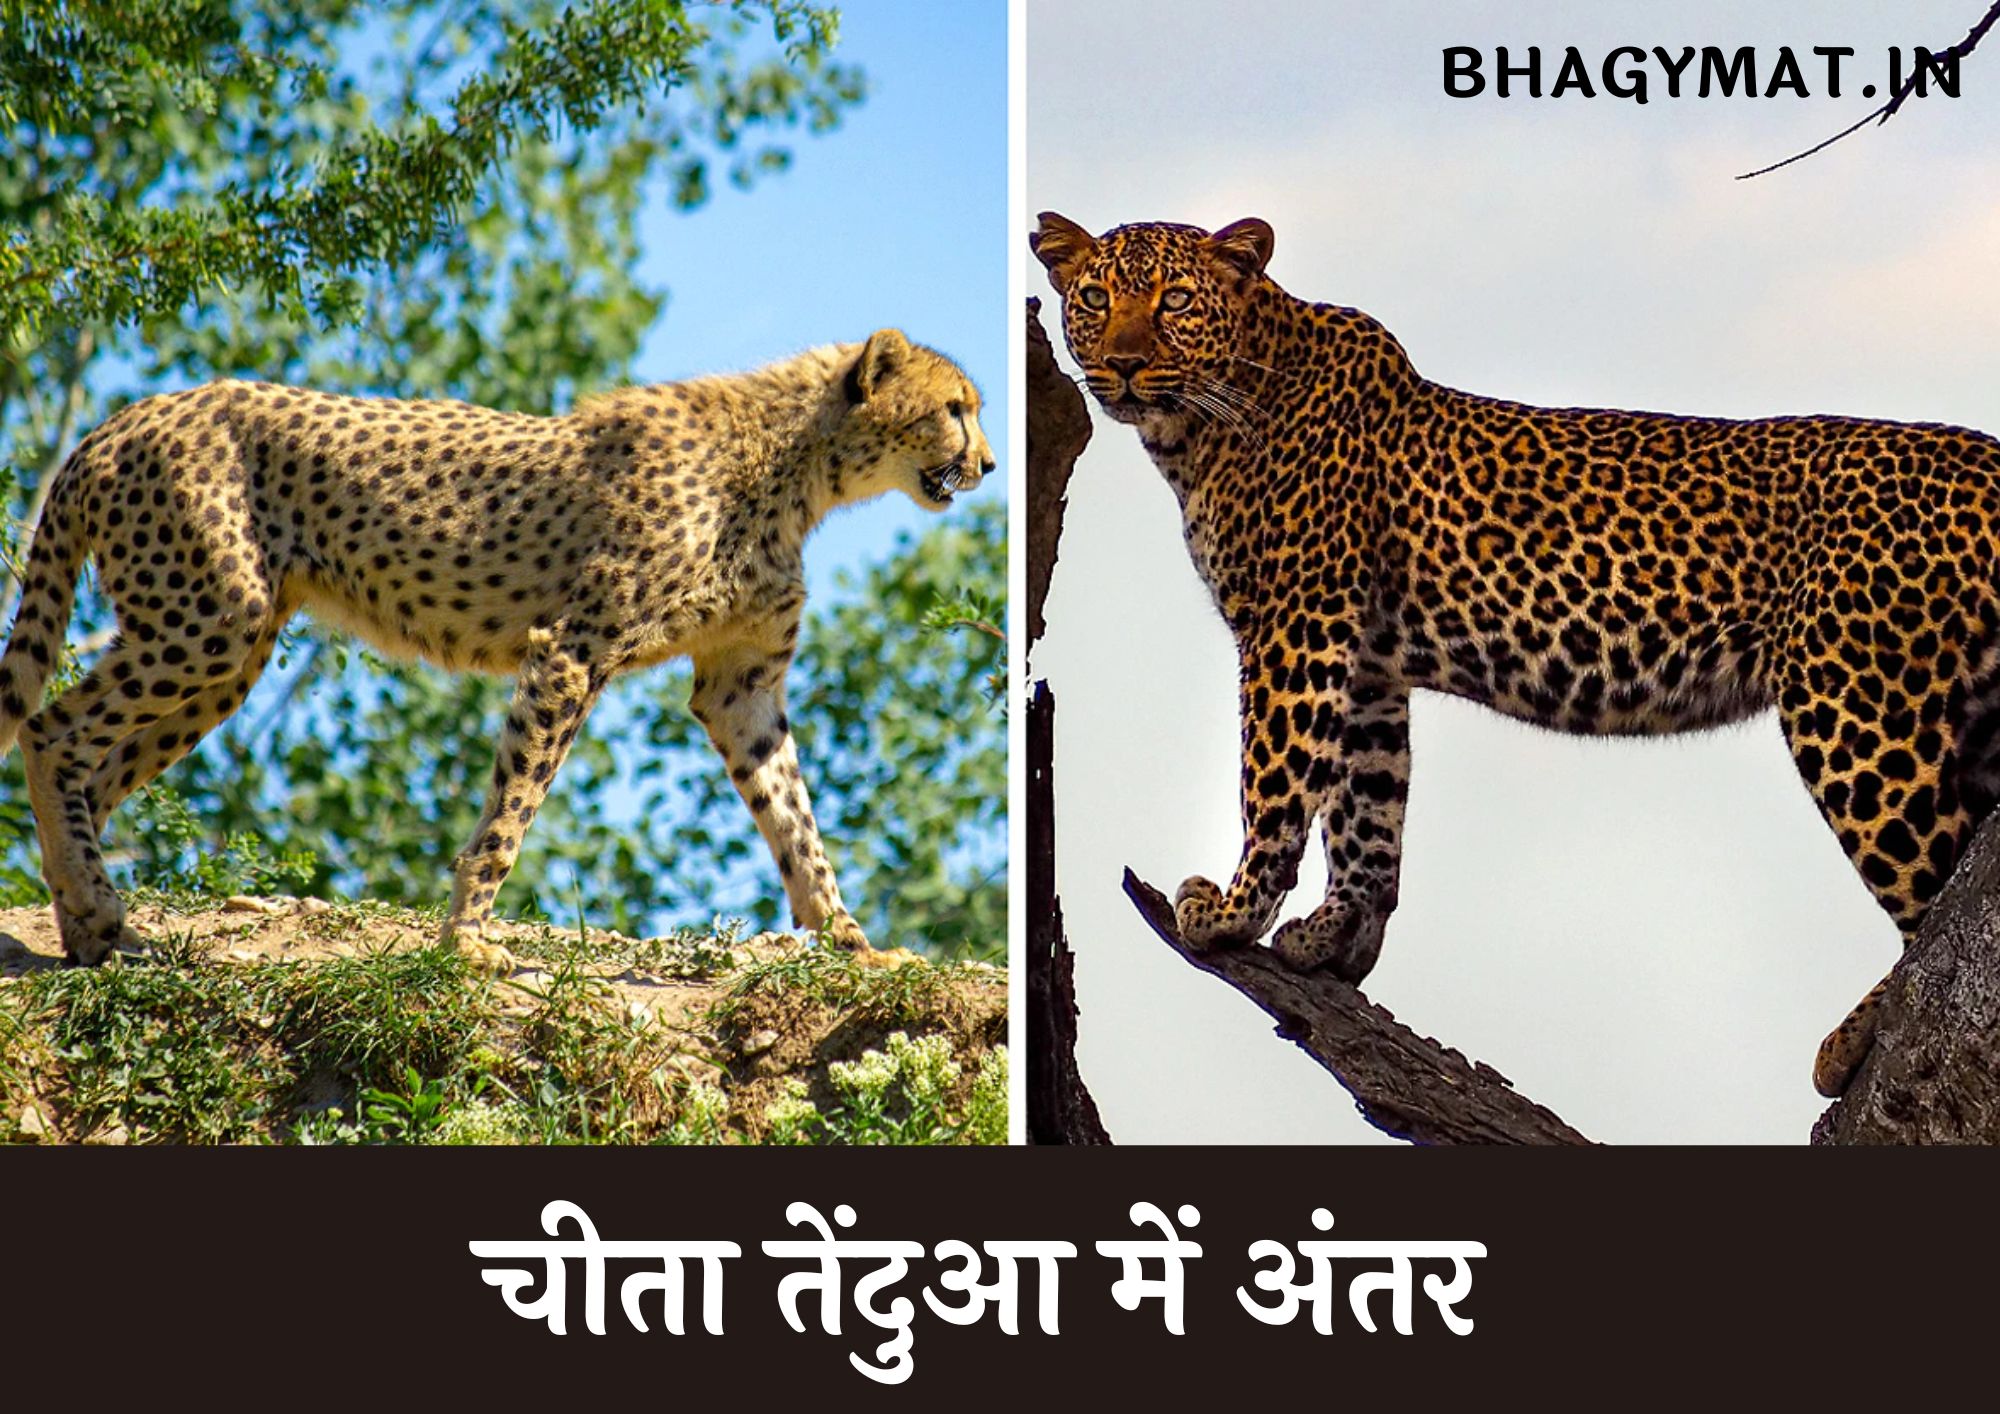 चीता तेंदुआ में अंतर - तेंदुआ और चीता में क्या अंतर है (Difference Between Cheetah And Leopard In Hindi)